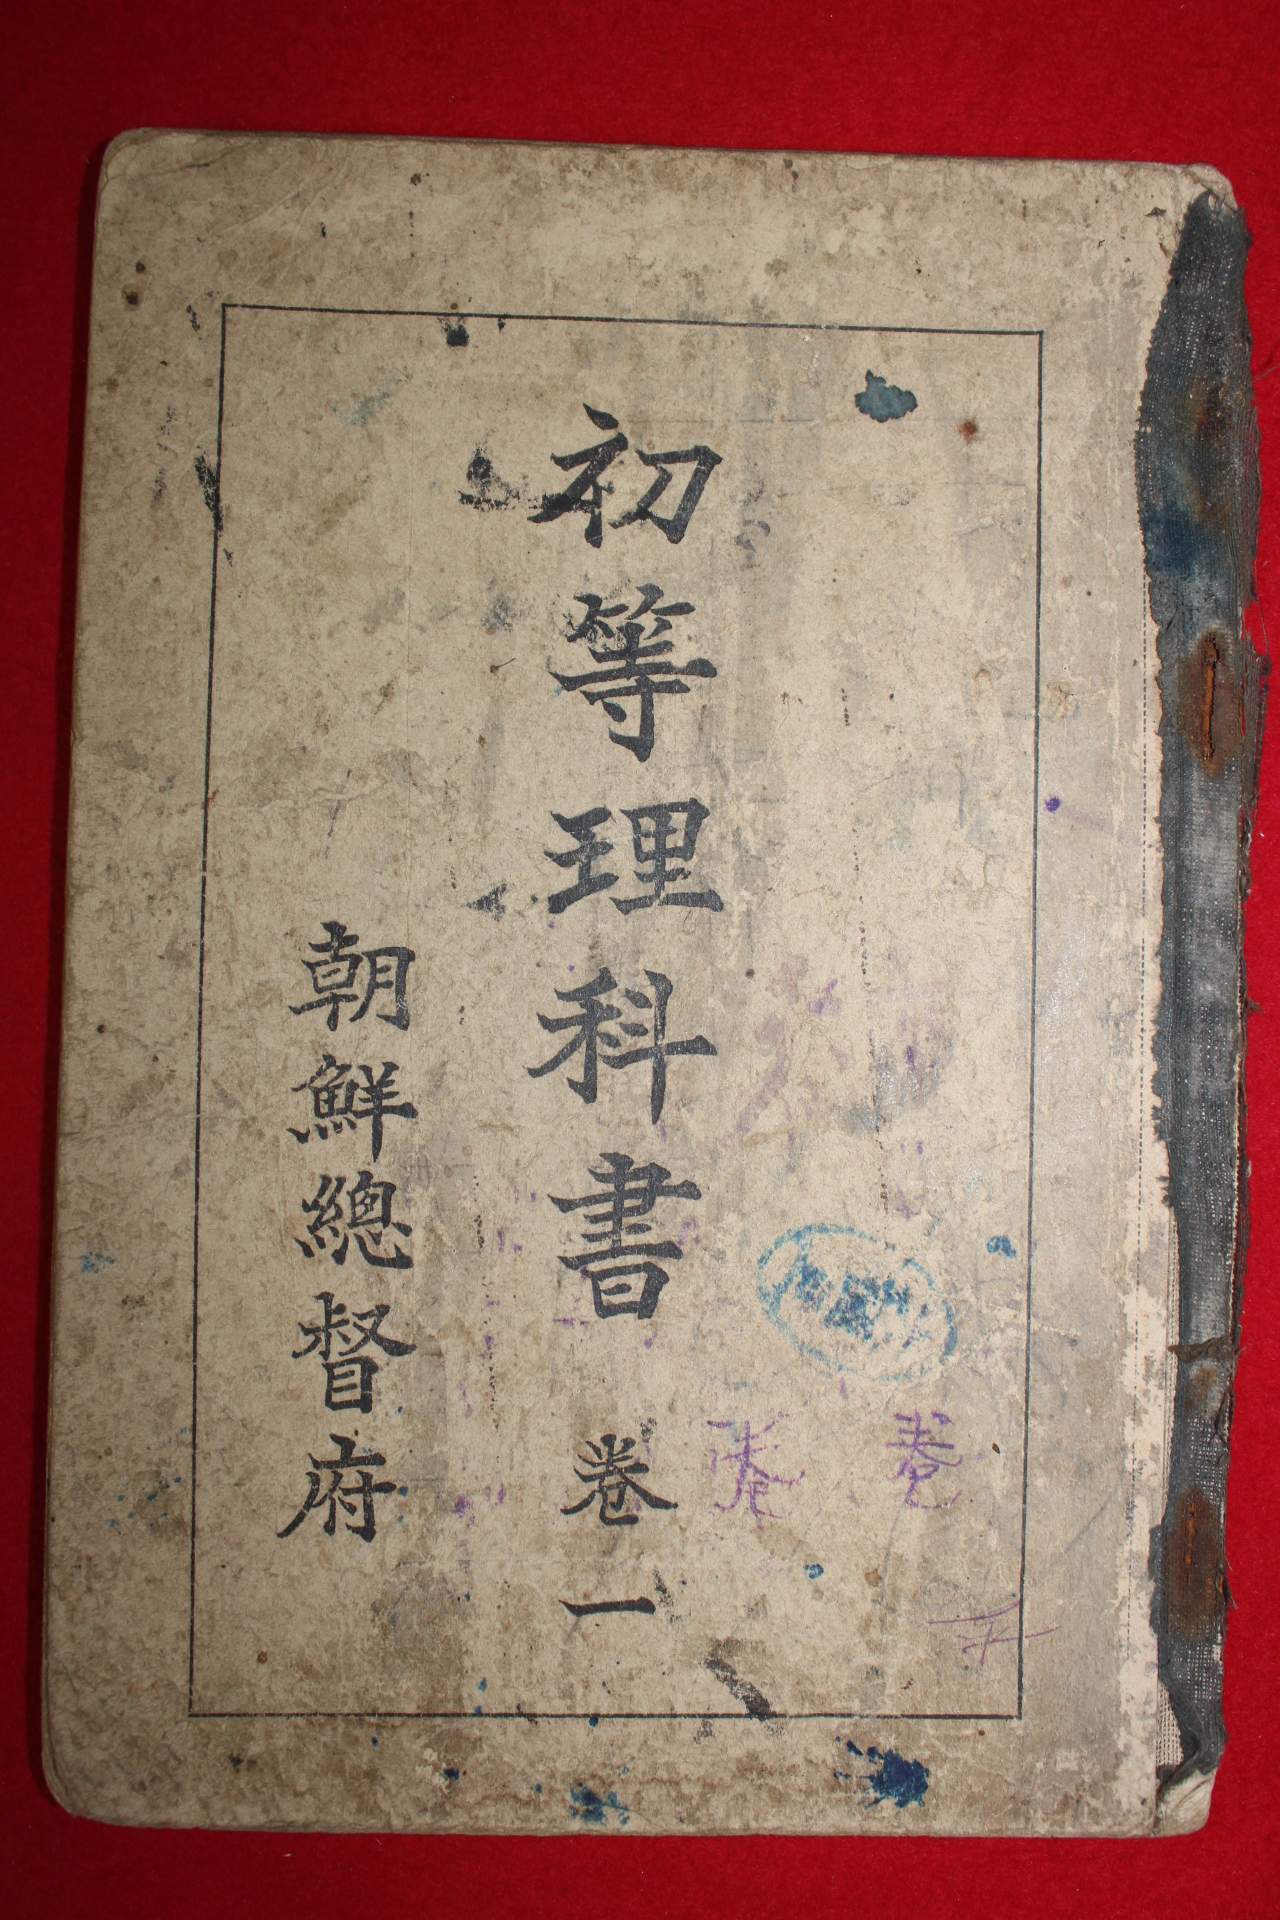 1931년 조선총독부 초등이과서(初等理科書) 권1